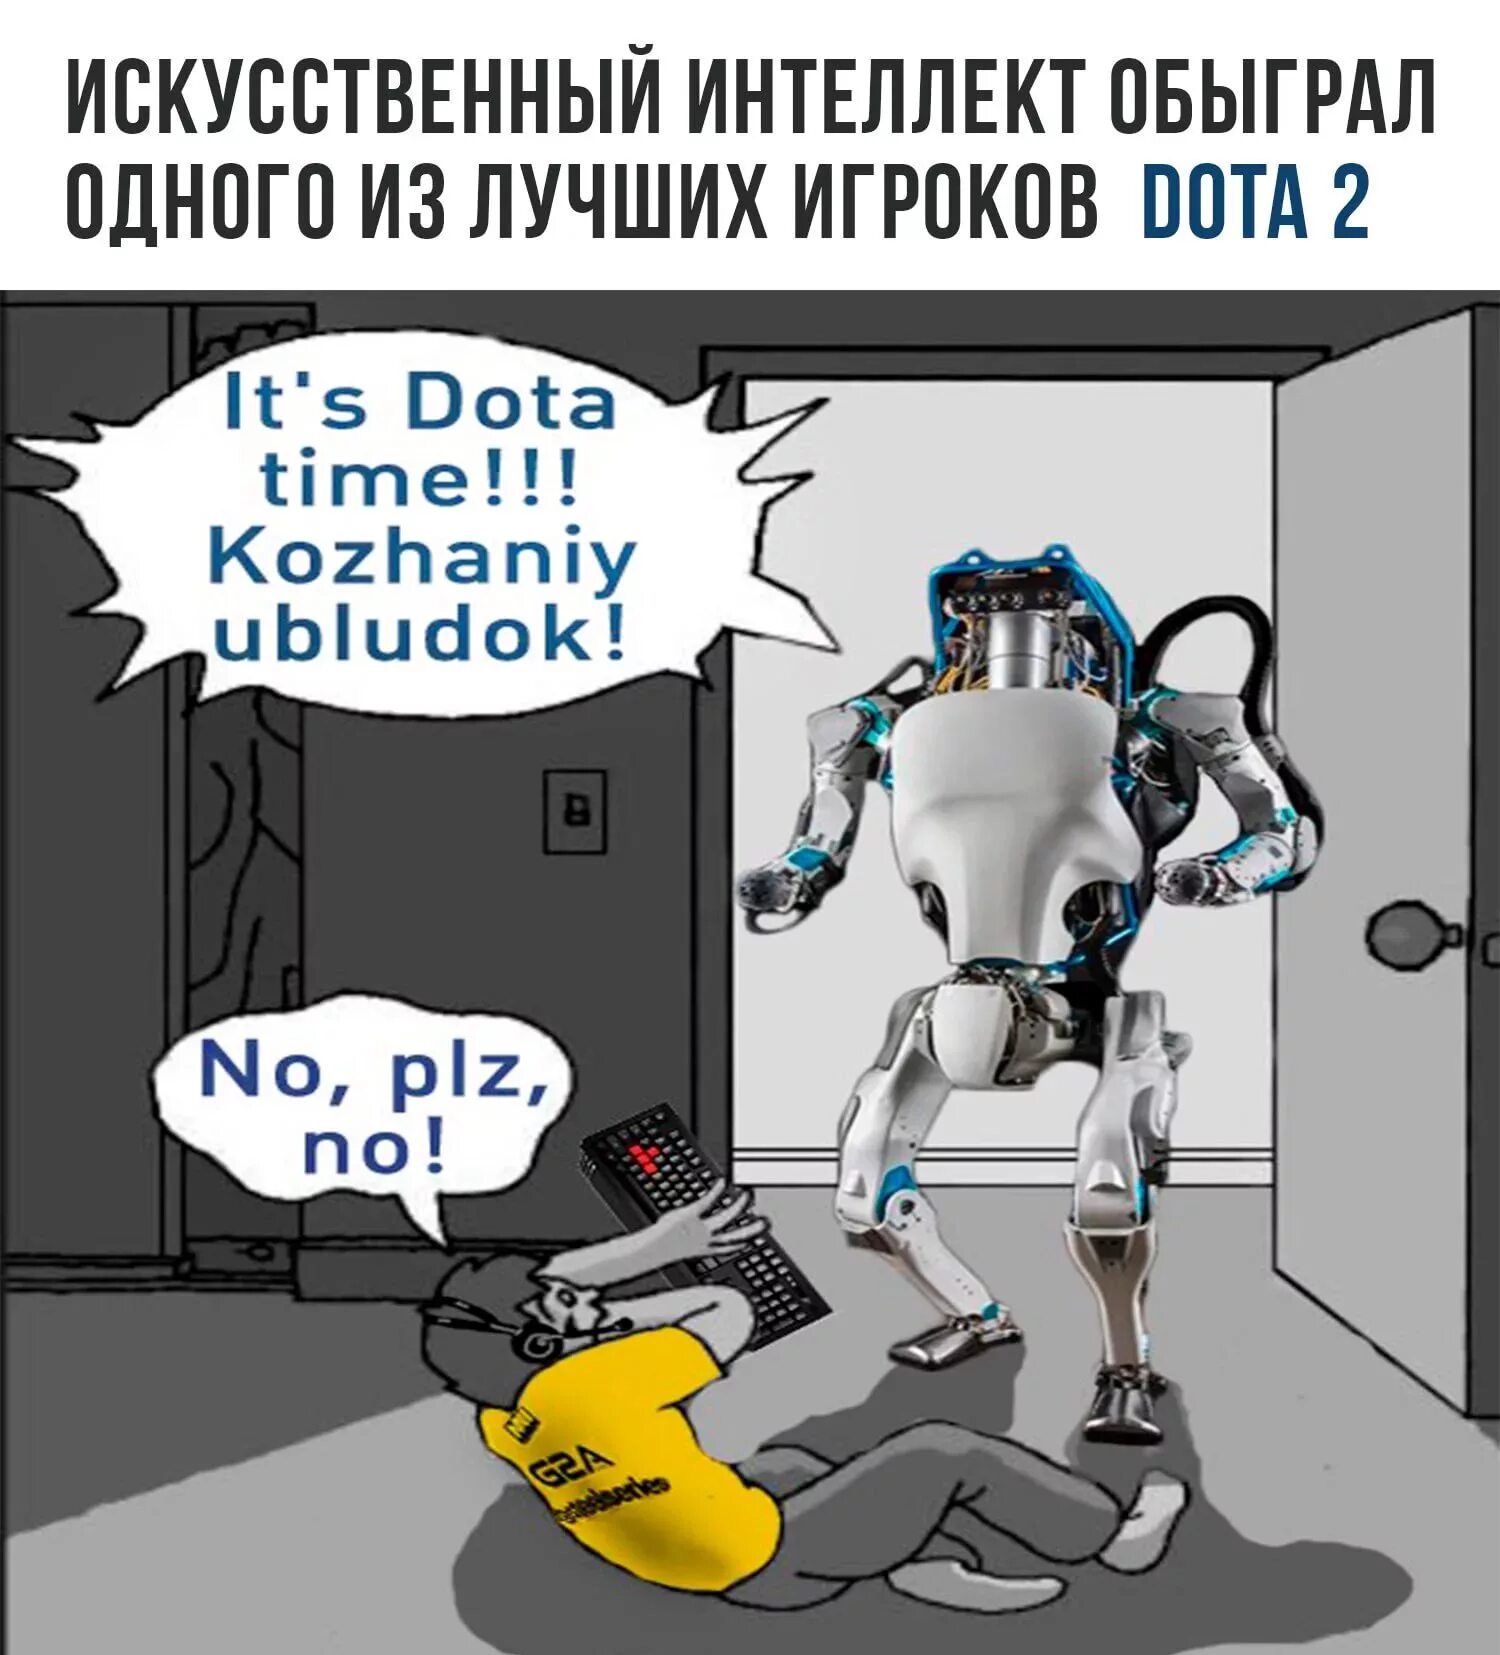 Шутки про искусственный интеллект. Искусственный интеллект приколы. Мемы про искусственный интеллект. Анекдоты про искусственный интеллект и роботов.